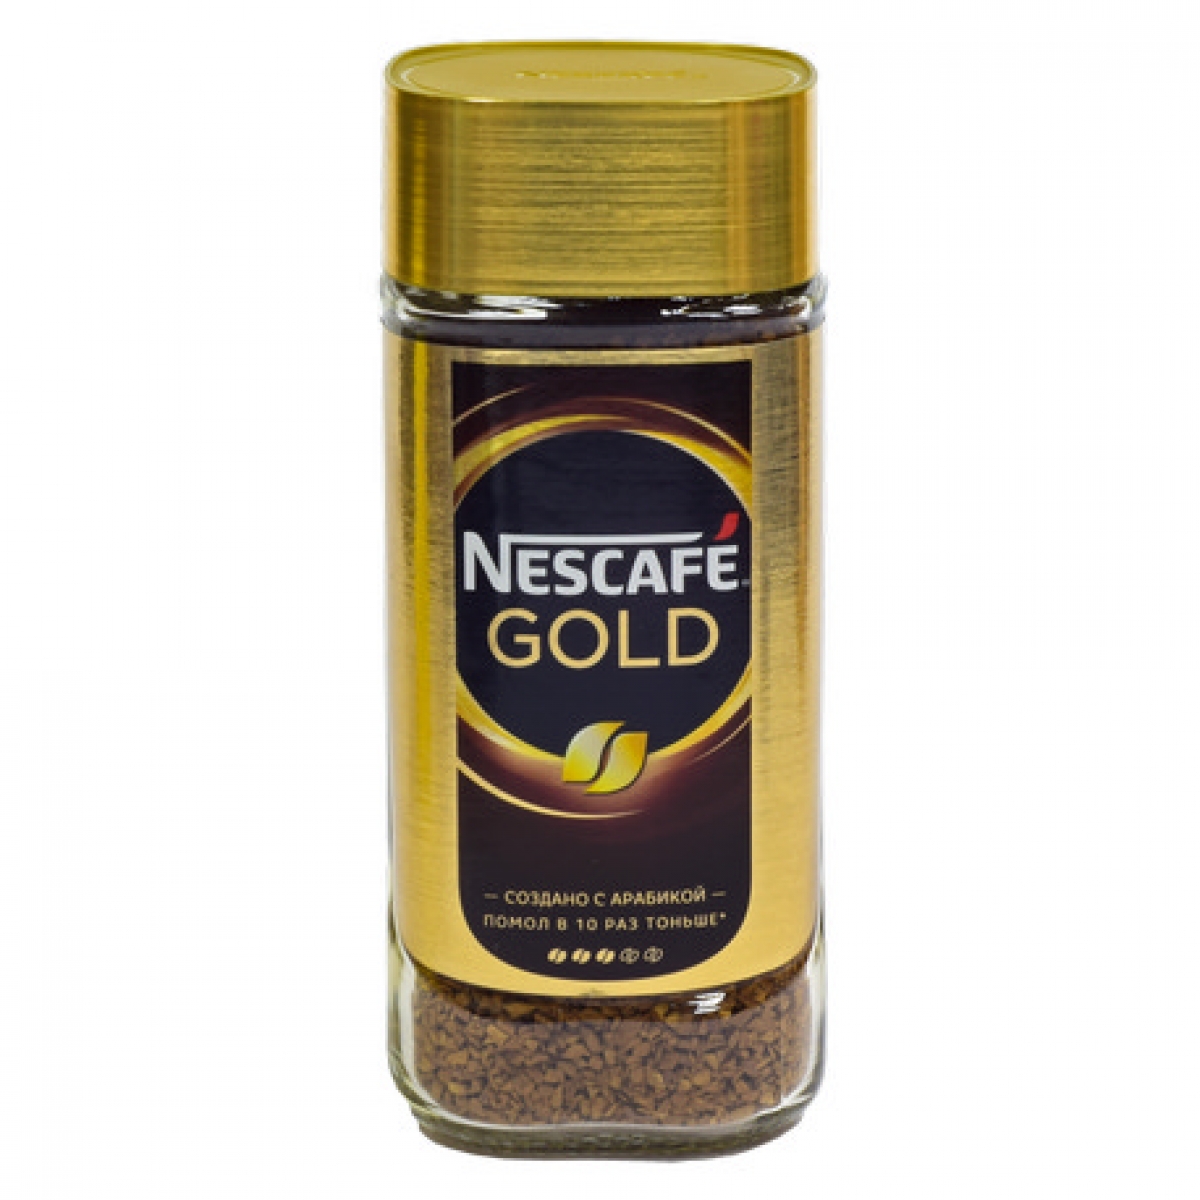 Кофе gold купить. Кофе Nescafe Gold растворимый с/б 95г. Кофе Нескафе Голд 95 гр. Кофе Нескафе Голд 95 грамм. Кофе Nescafe Gold растворимый, 95г.